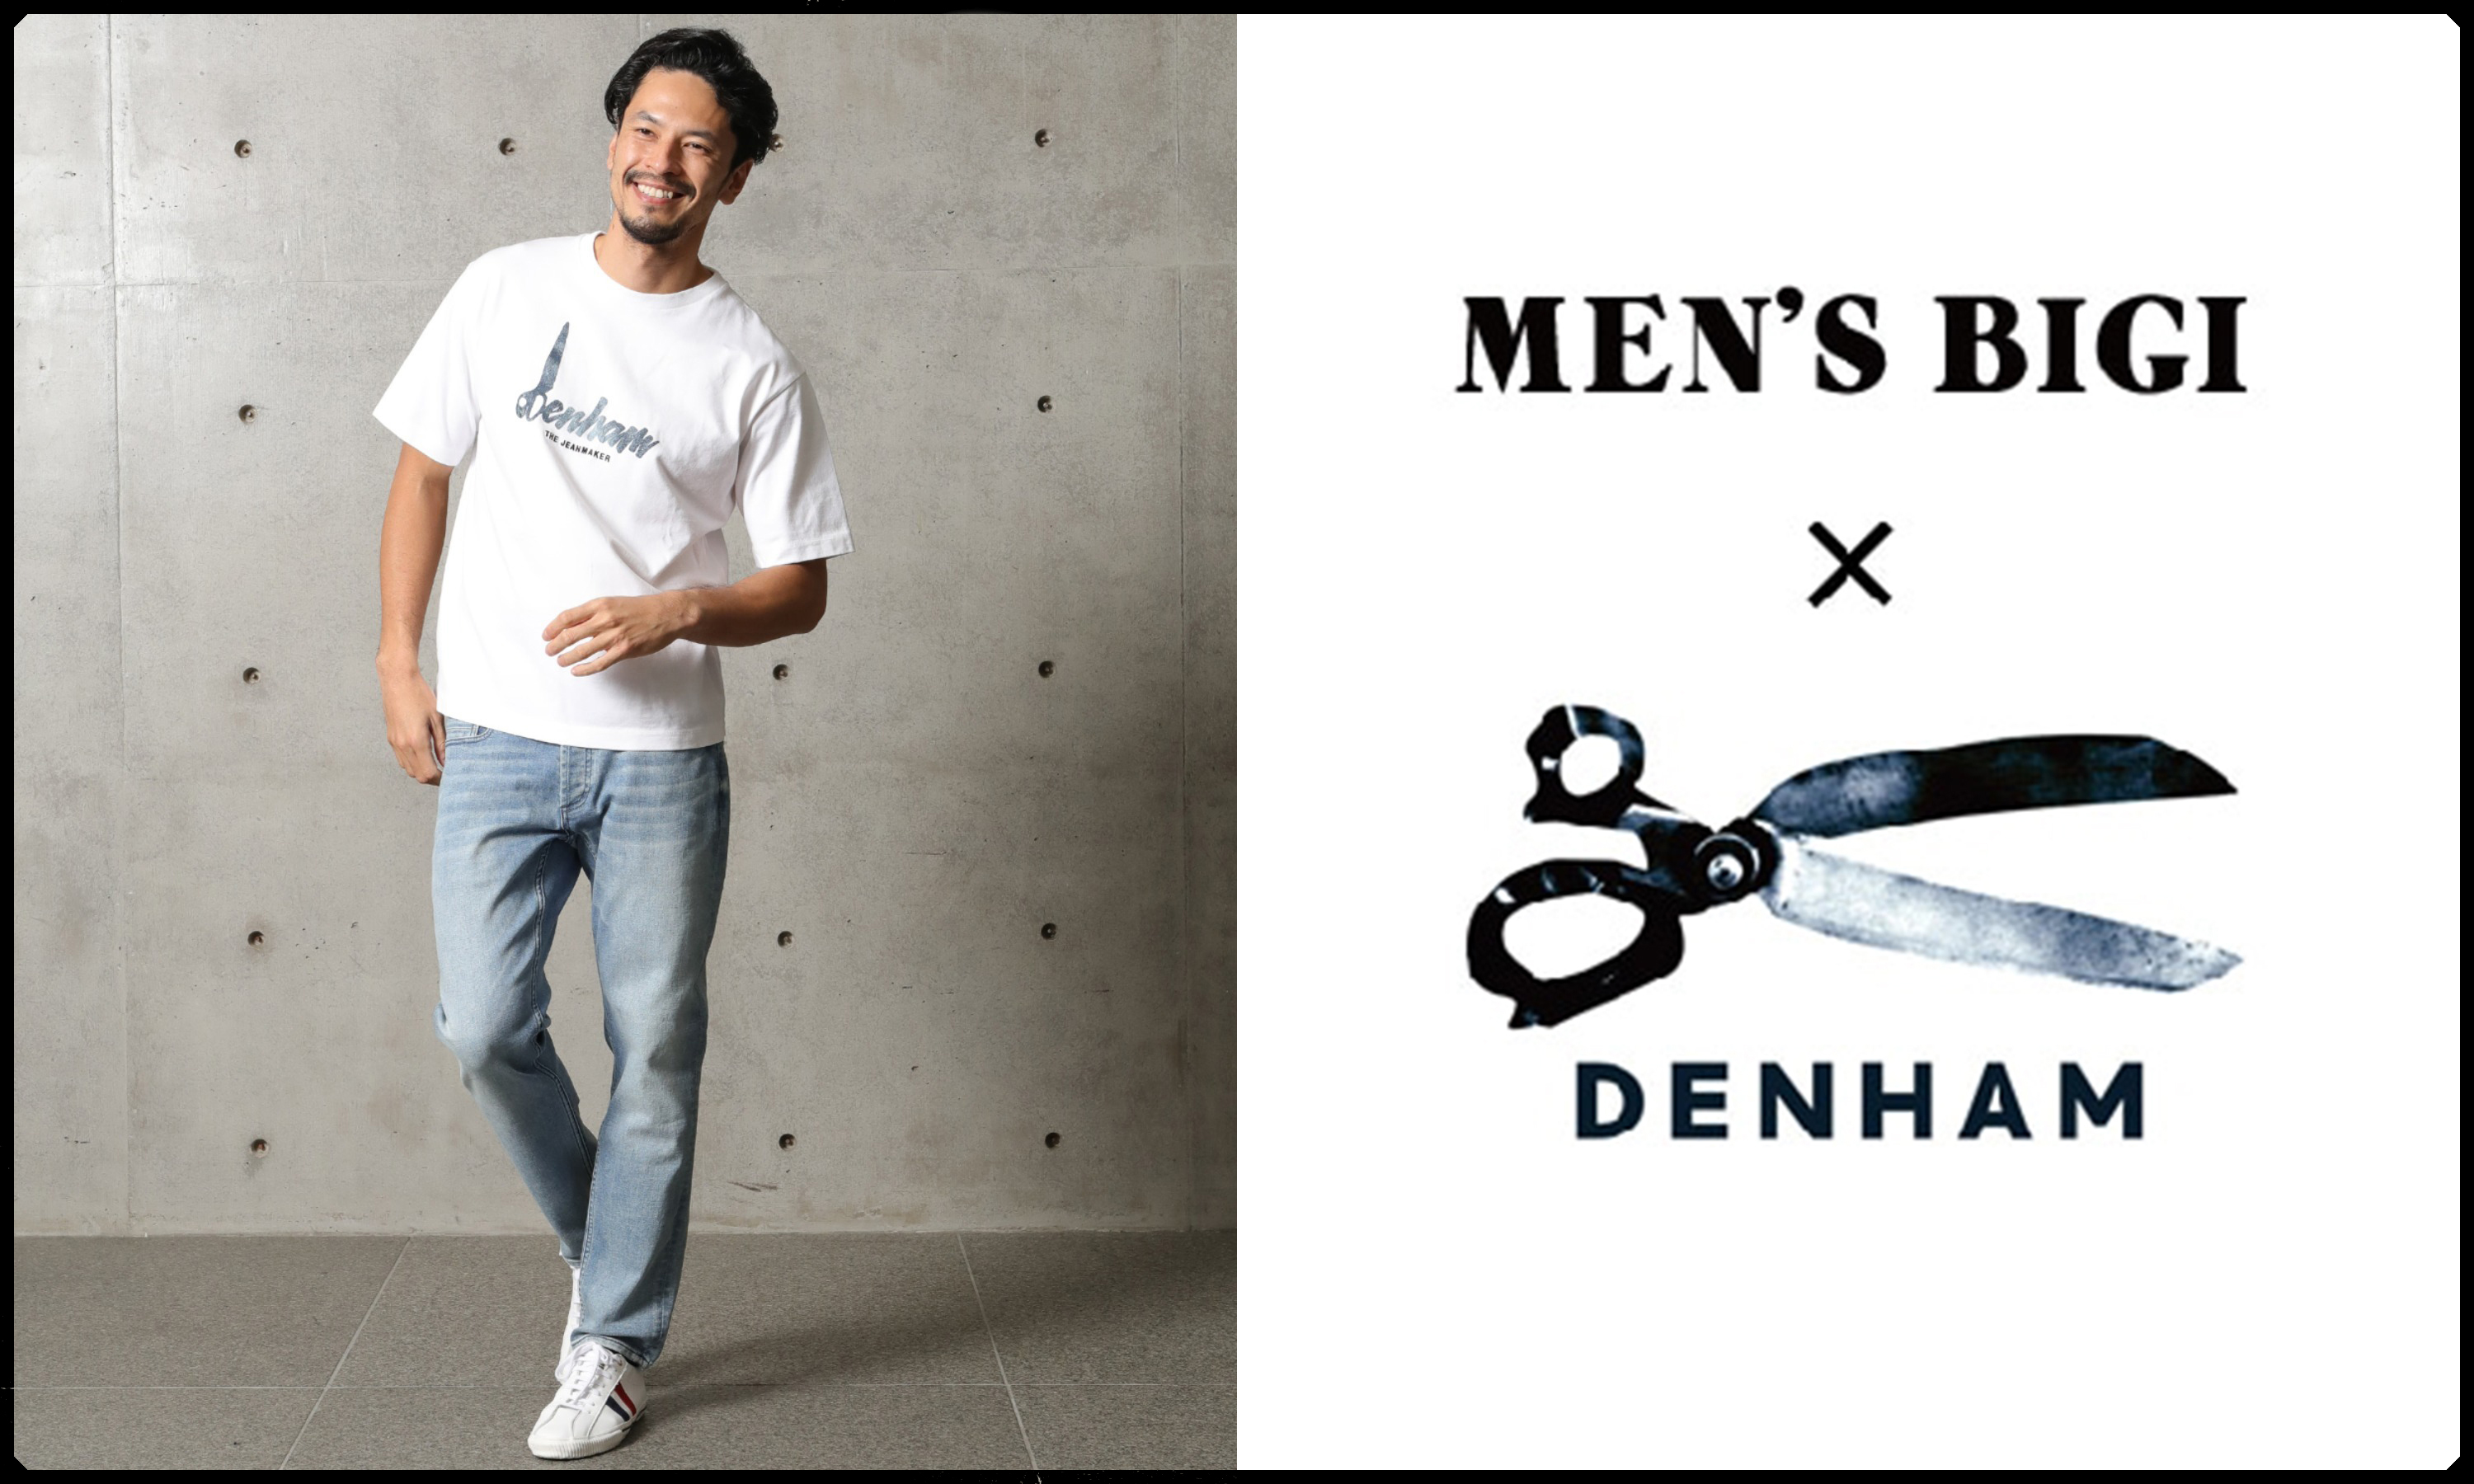 オランダの人気デニムブランド「DENHAM」と「MEN'S BIGI」とのコラボレーションシリーズに新作が登場｜株式会社メンズ・ビギのプレスリリース